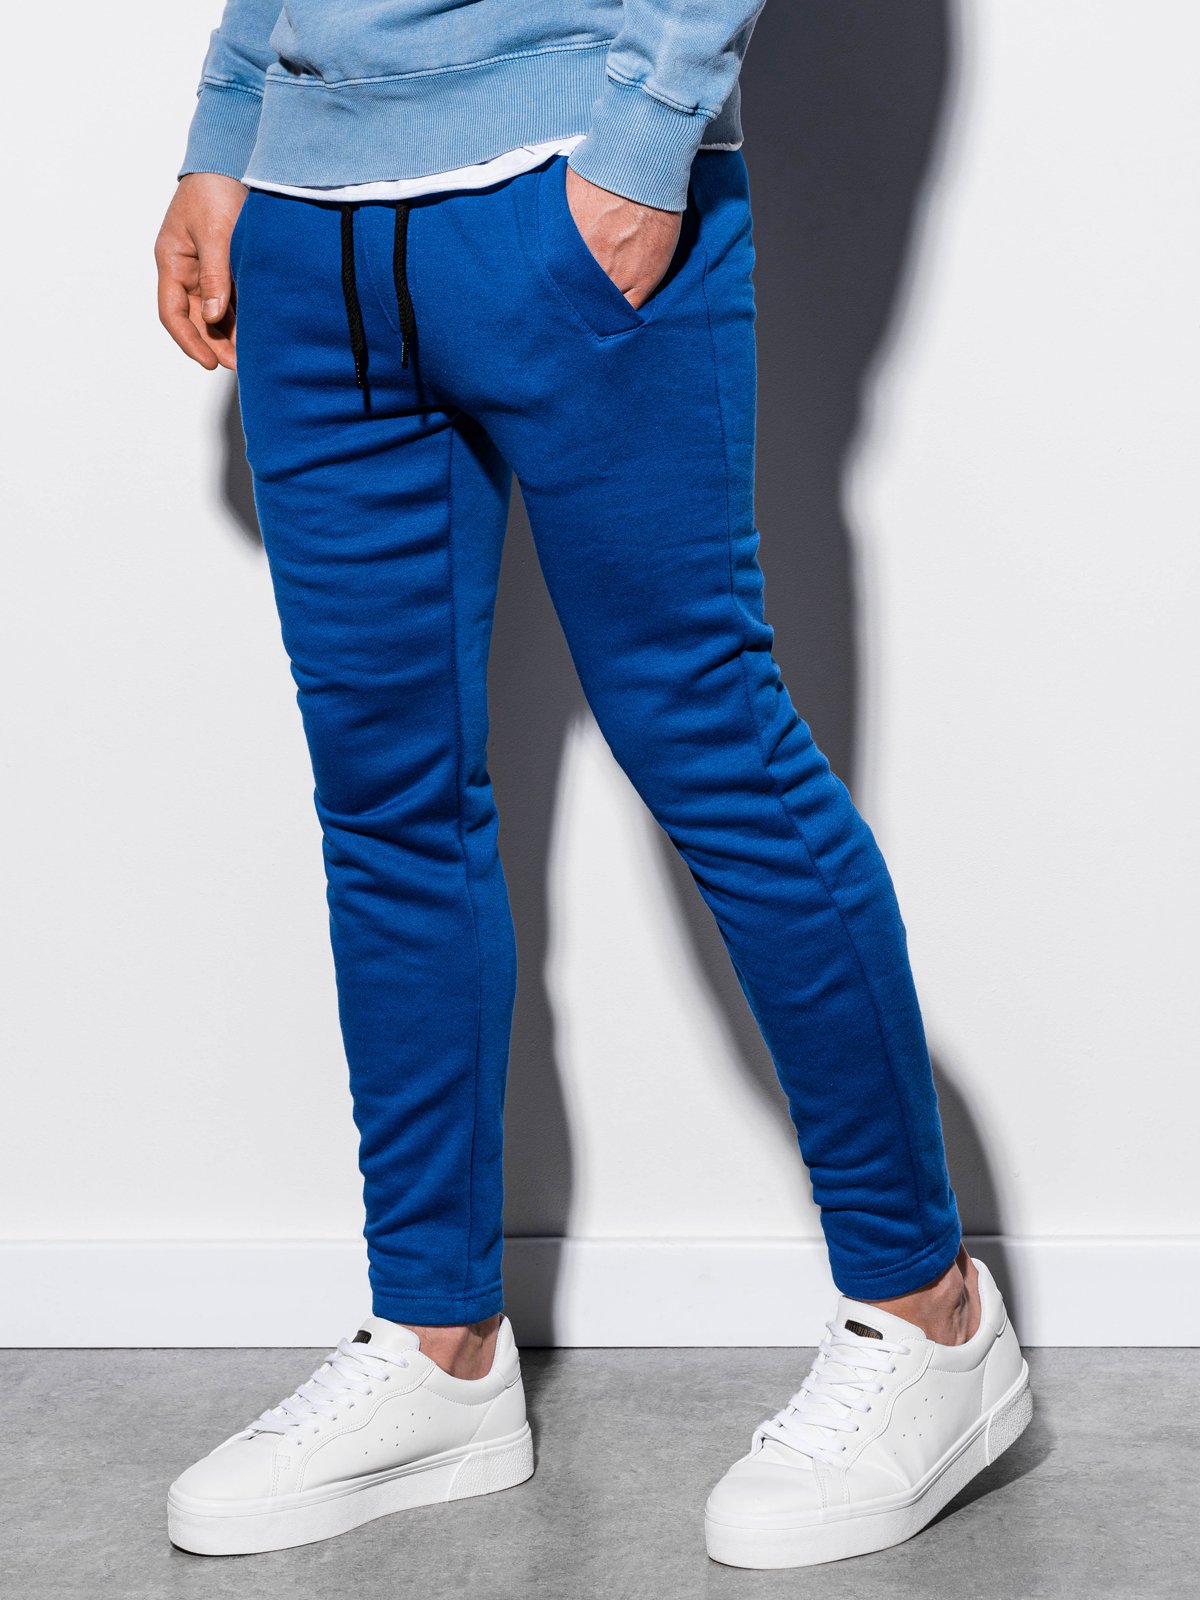 Men's sweatpants P866 - blue | MODONE wholesale - Clothing For Men